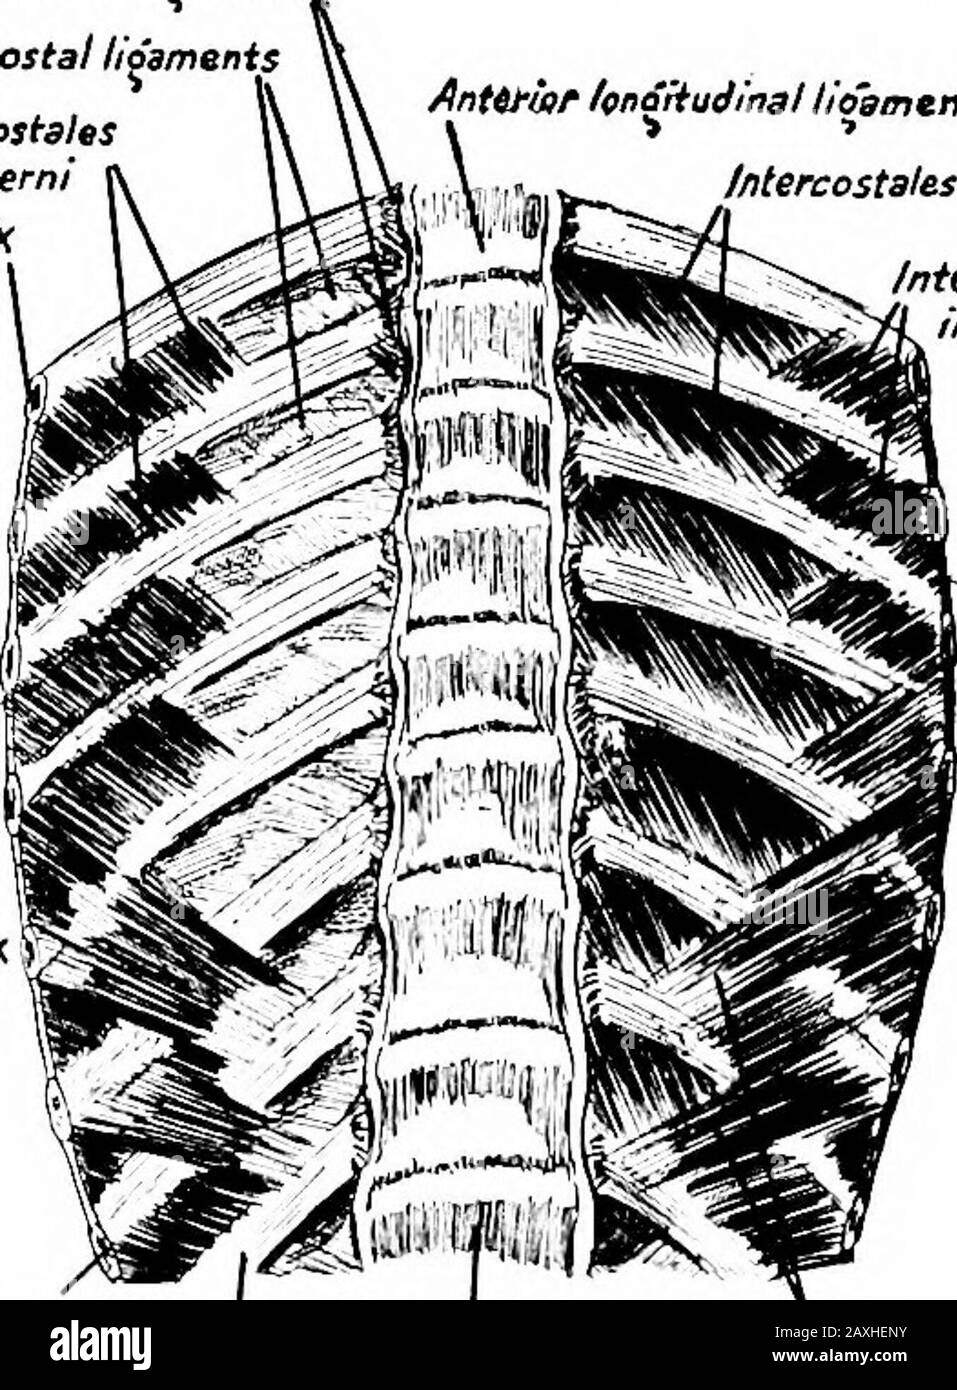 Un manuale di anatomia . Antillfior Icp^udlnai lioamznt Ifttercostales externr Mercostaleiinterni R.ibVII-.. RibbXix RibbXlt Lumbar vertebrali costali Figura 130. Fig. 131. Fig. 130, - lo sterno, le estremità sternali delle clavicole e delle costole, con gli intercostali, e il tranversus thoracis, visto da dietro. {Sobotla e McMnrrich.) Fig. 131.-la quinta alla dodicesima vertebre toraciche e le estremità vertebrali delle costole che rispondono, con le intercostali e i sottocalici visti dalla parte anteriore. Sul lato sinistro sono stati rimossi i legamenti intercostali. {Sobotta e McMurrich.) i trasvers m. Foto Stock